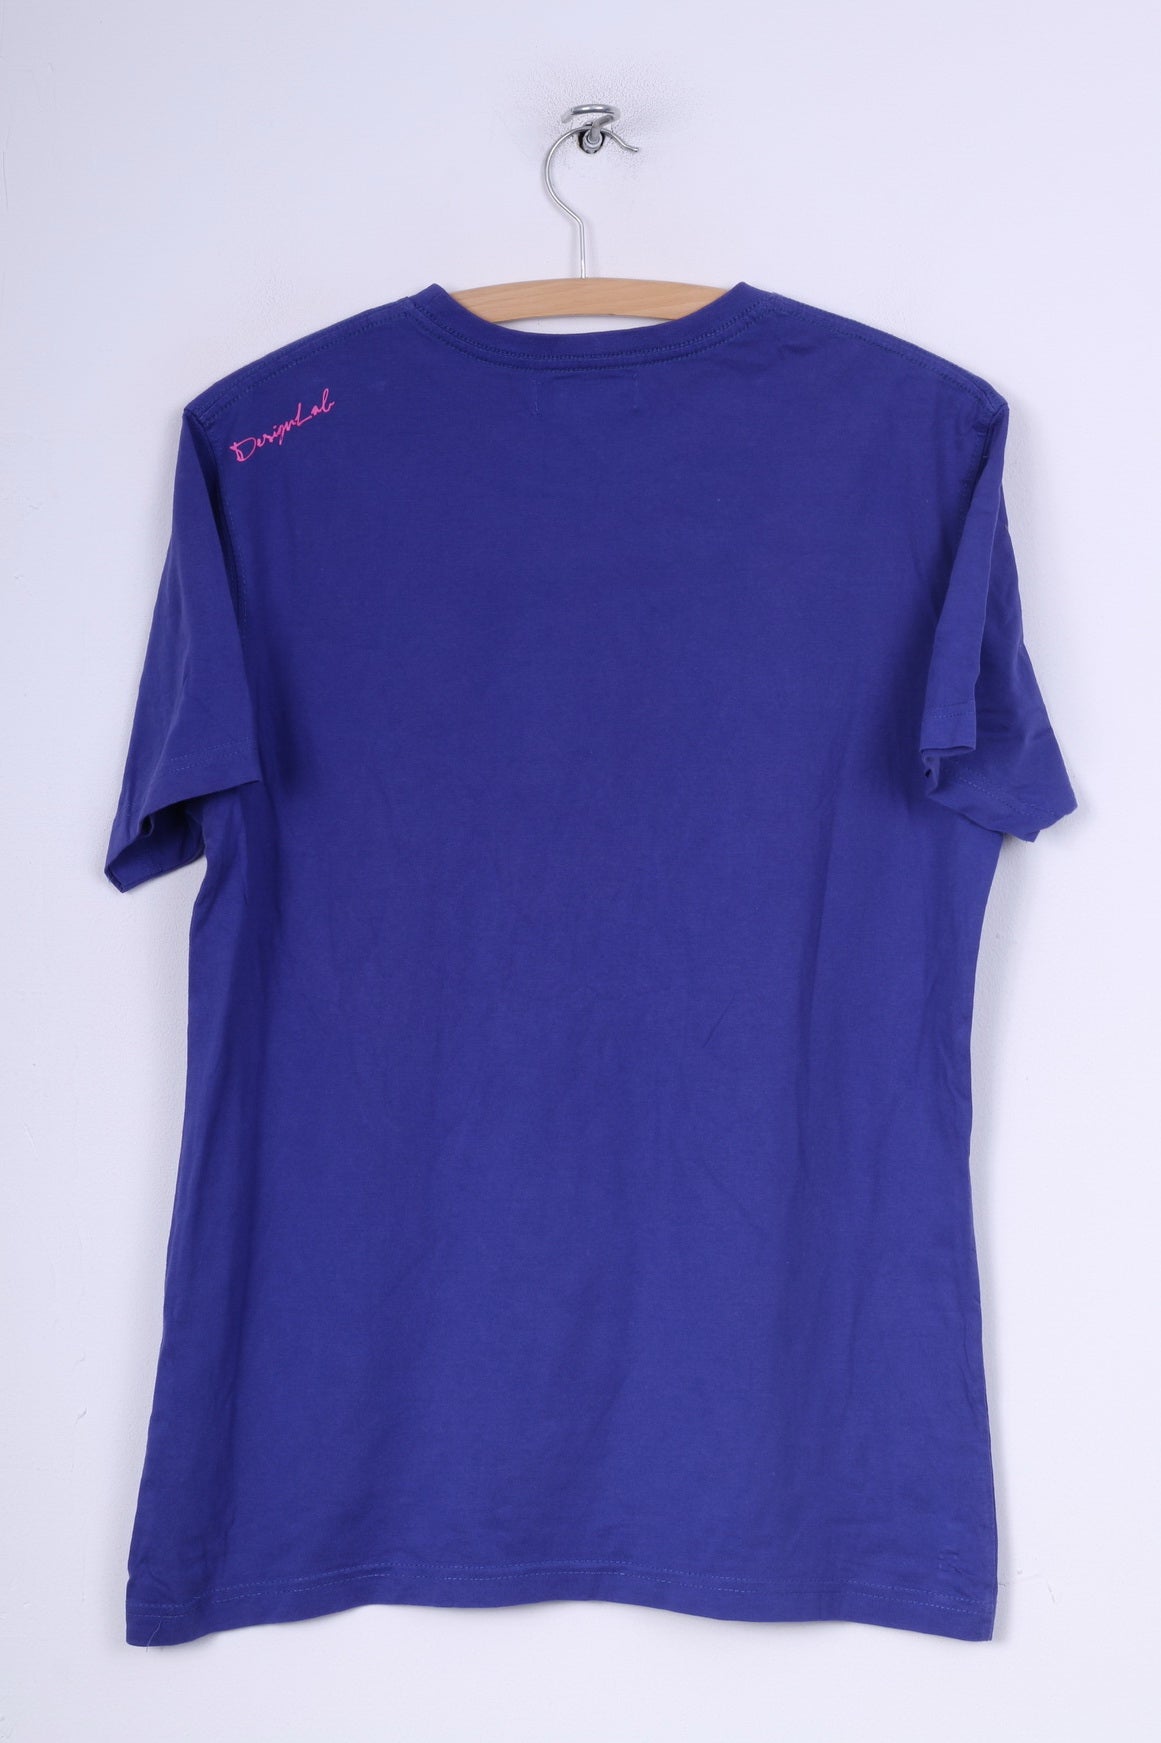 Mauro Ferrini Mens M T-Shirt Purple Crew Neck Graphic Cotton Arti Fici ...